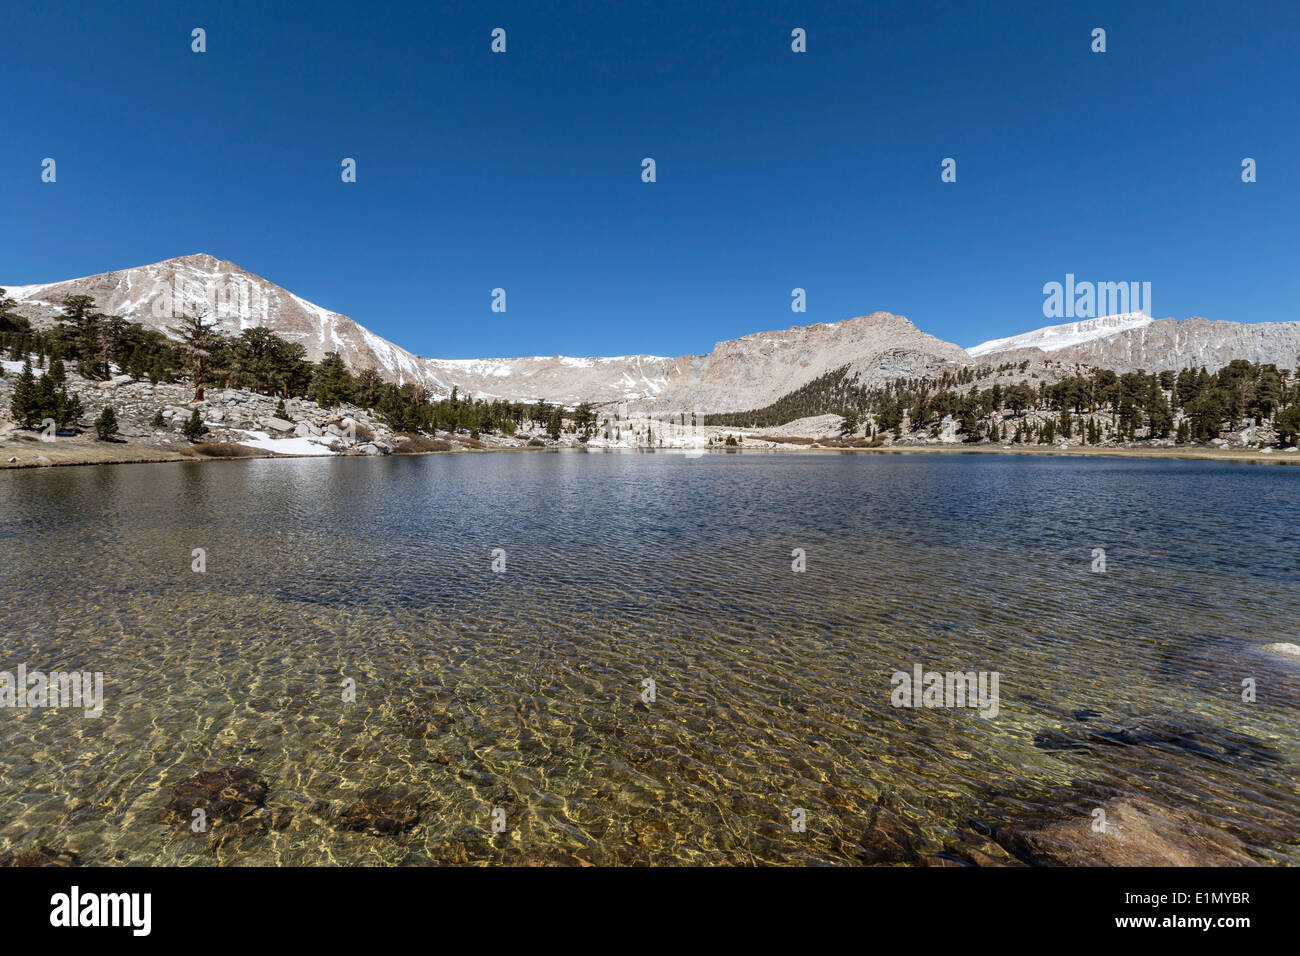 South Fork See im kalifornischen Cottonwood Seen Becken Sierra Nevada Berge Wildnis. Stockfoto